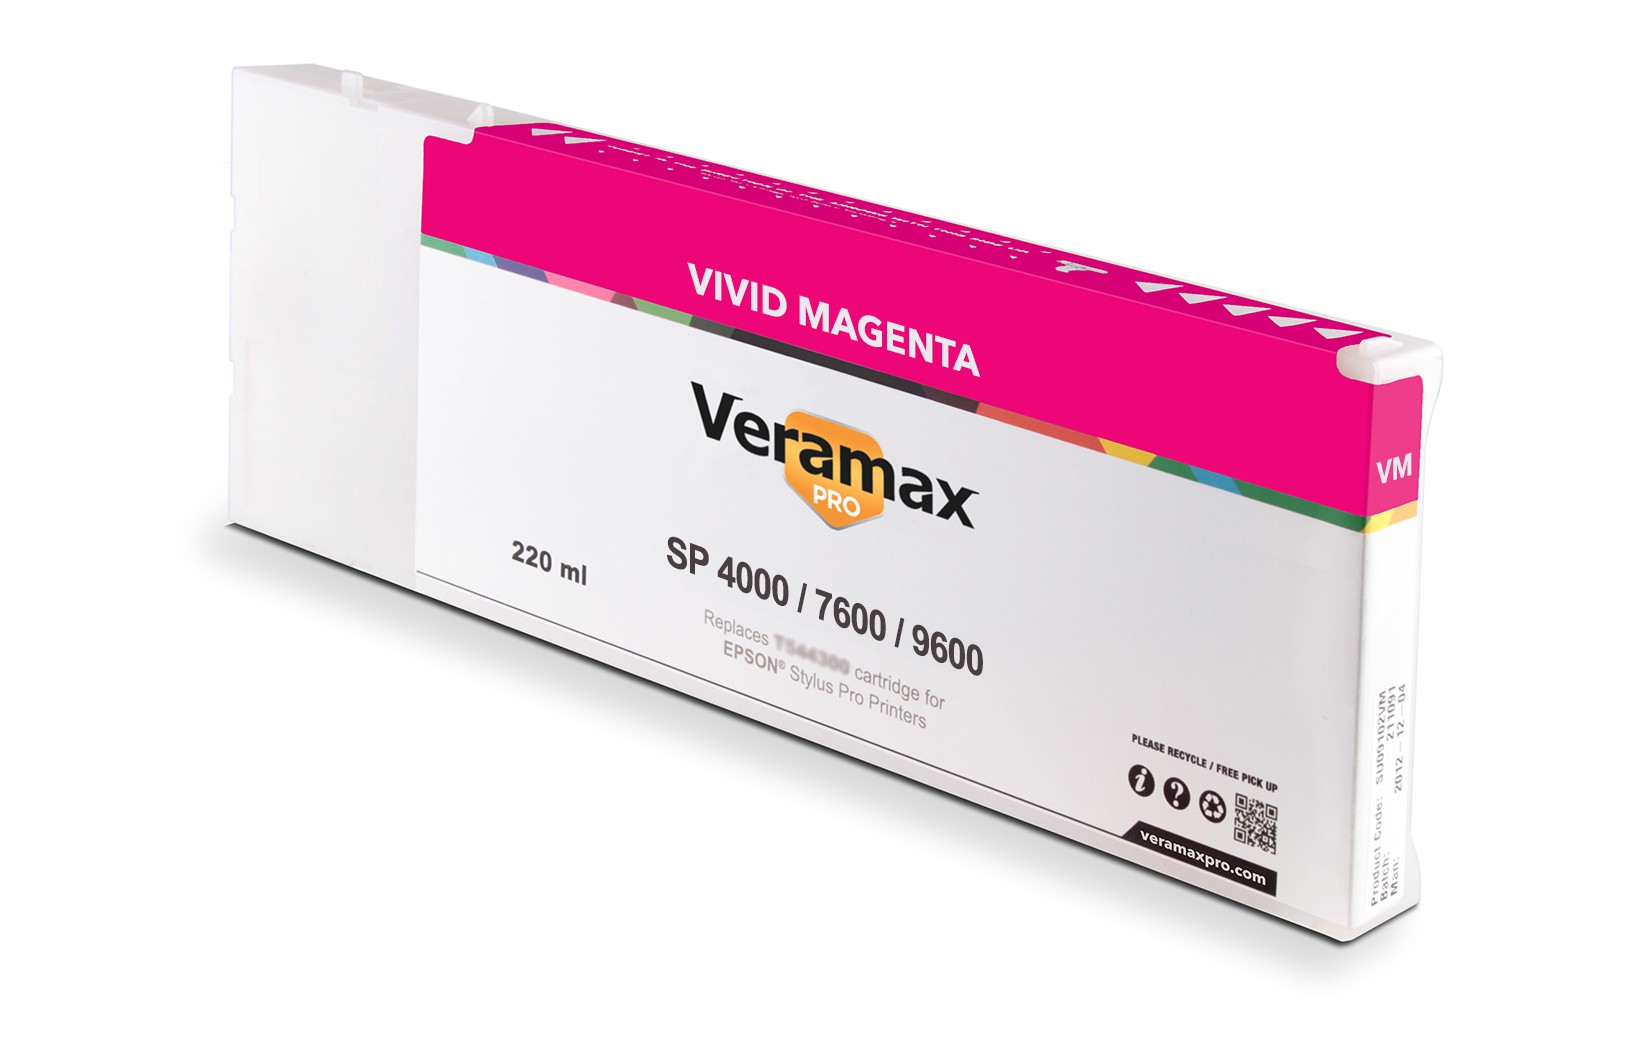 Veramax PRO SP 4000/7600/9600 220ml Vivid Magenta